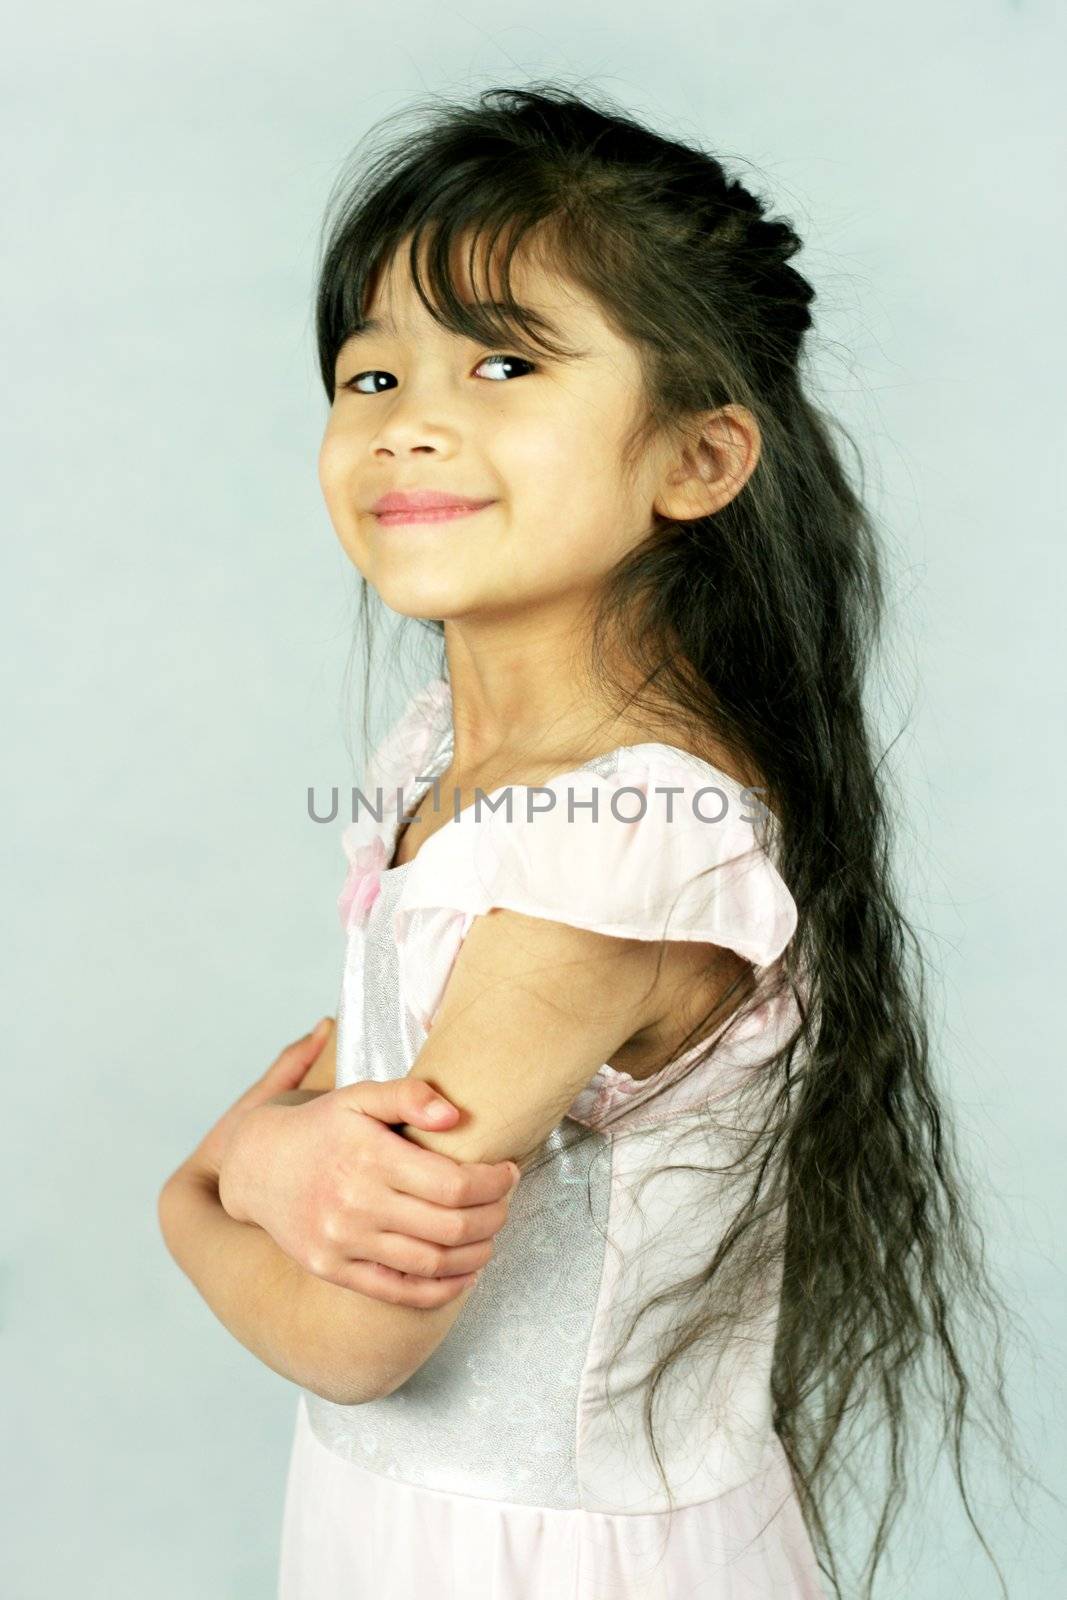 Little confident girl, part Scandinavian,Asian descent